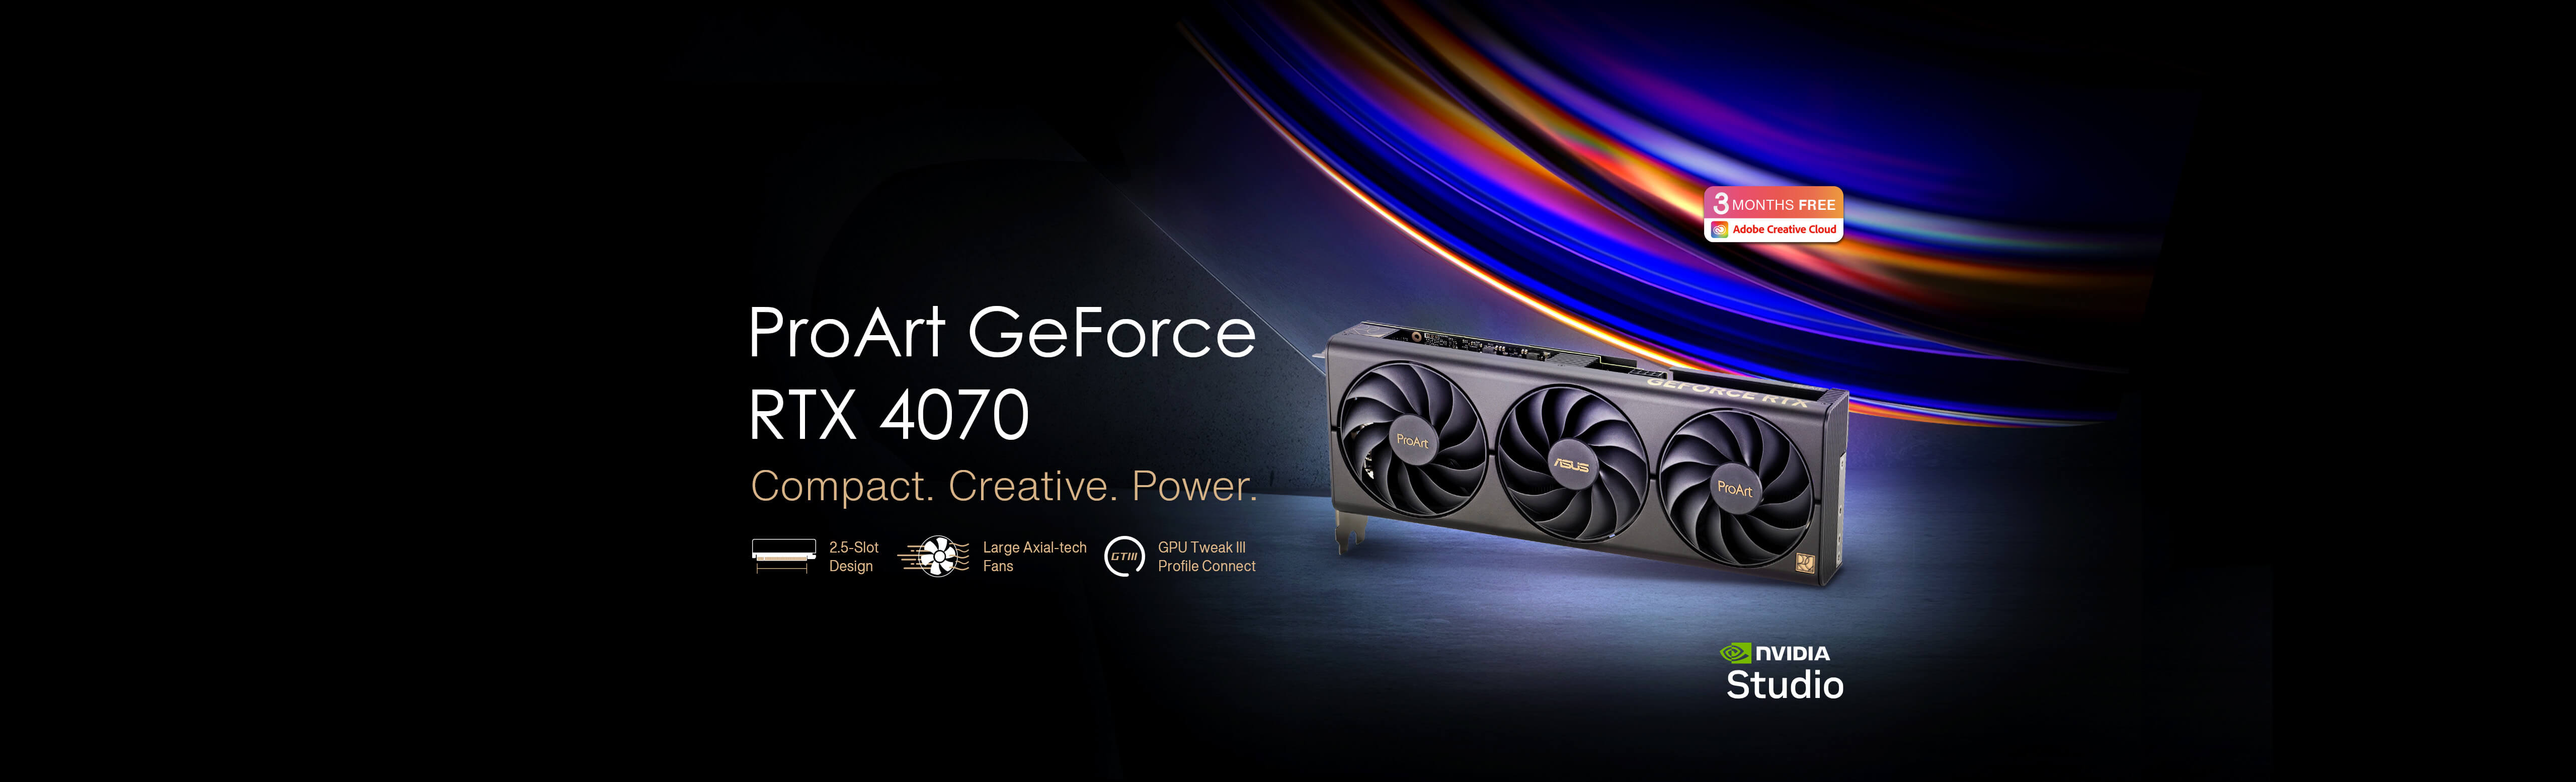 ASUS ProArt GeForce RTX™ 4070 Grafikkarte auf einem rohen Betonboden mit den Logos von Adobe Creative Cloud und NVIDIA Studio